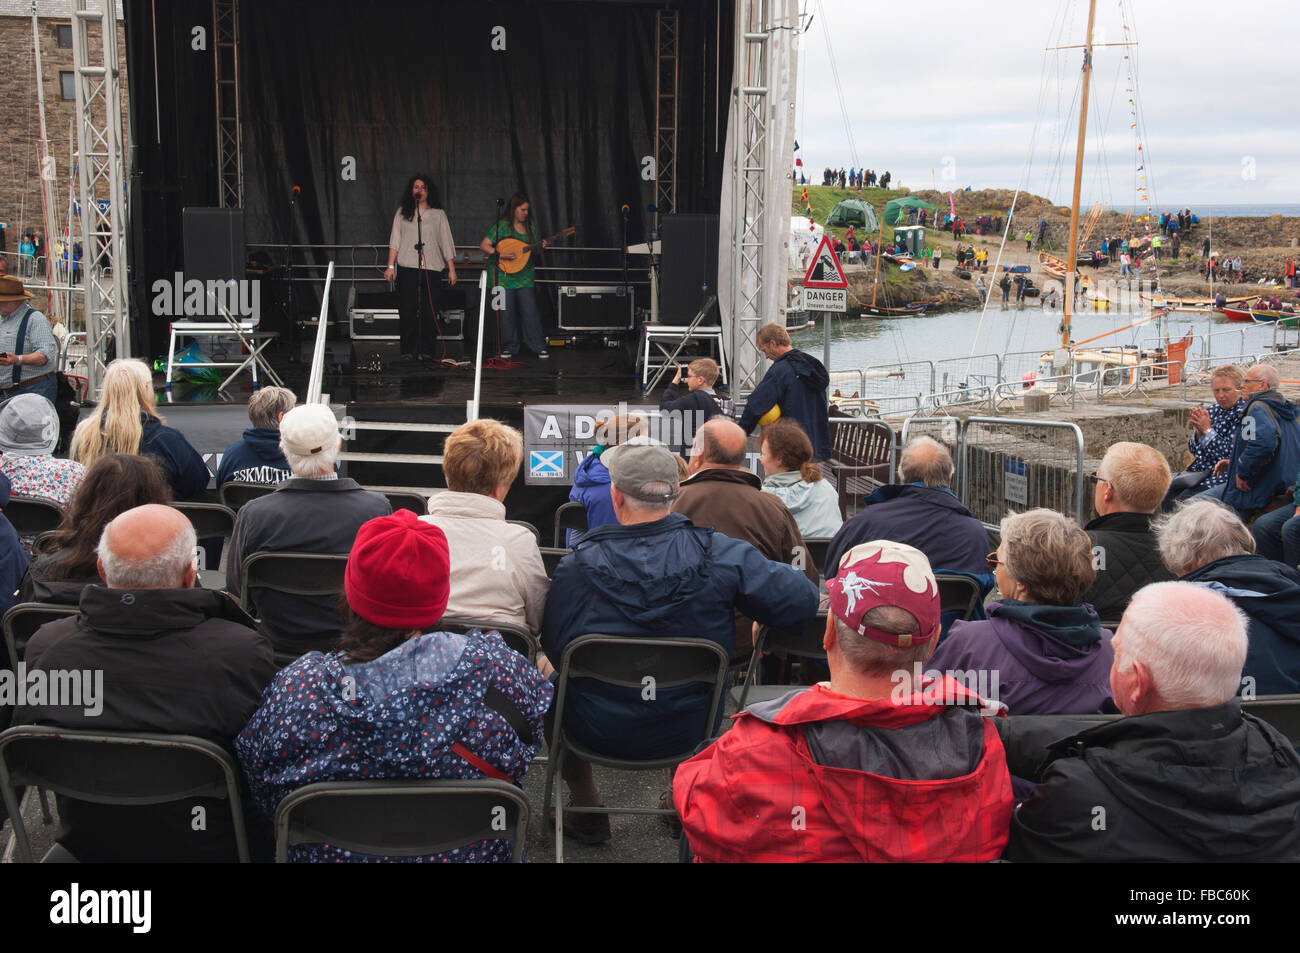 Live-Musik in der schottischen traditionellen Boat Festival in Portsoy - Aberdeenshire, Schottland. Stockfoto